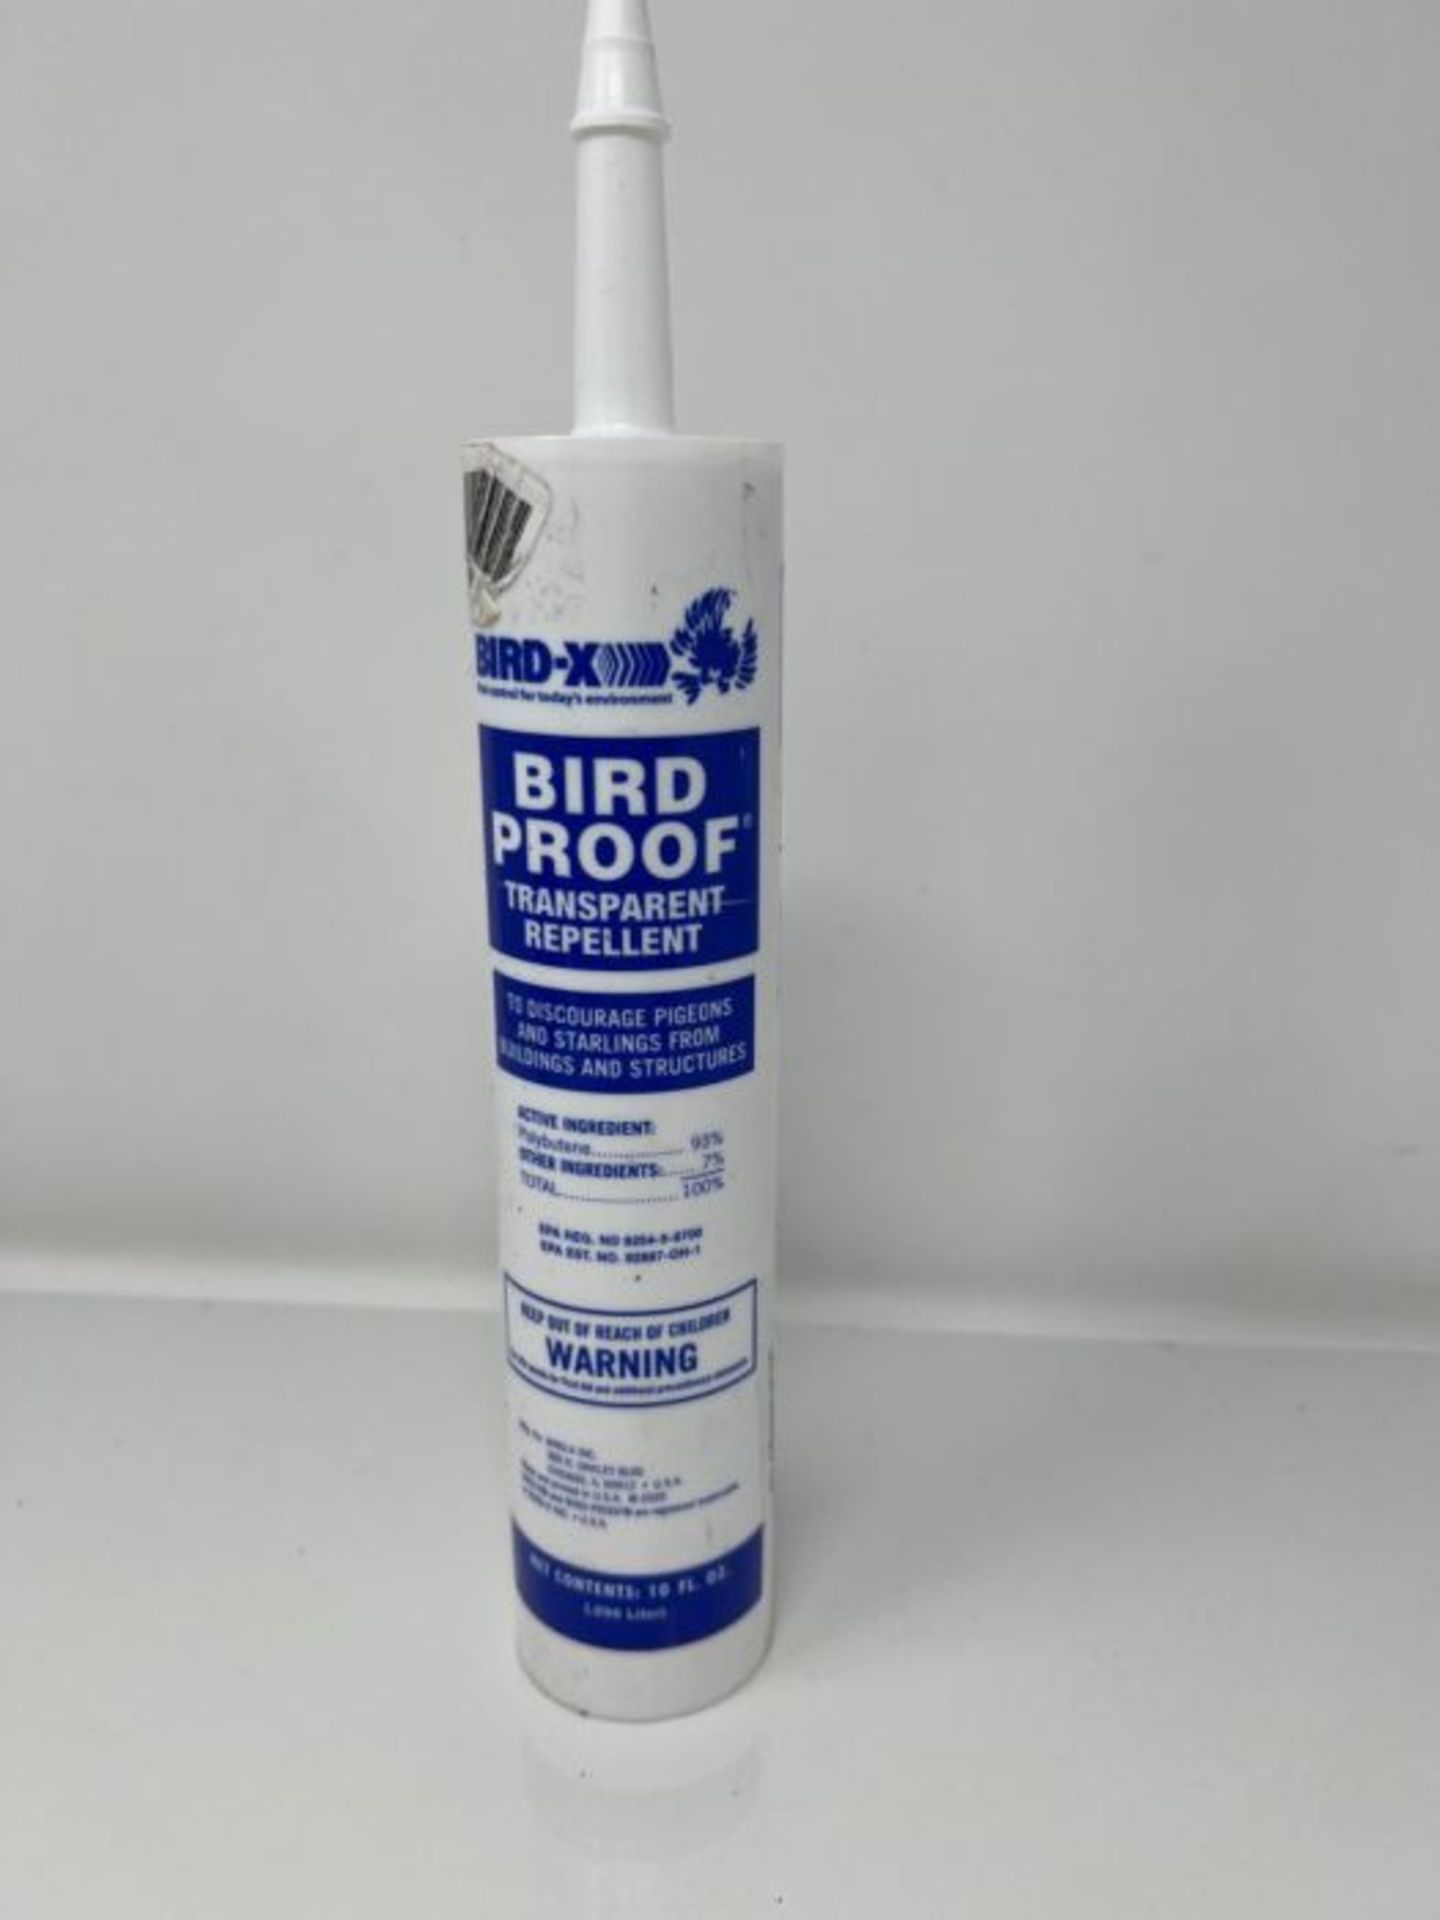 Bird-X 54-1 Proof Bird Repellent Gel-10 oz, 1-(Pack) - Image 2 of 3